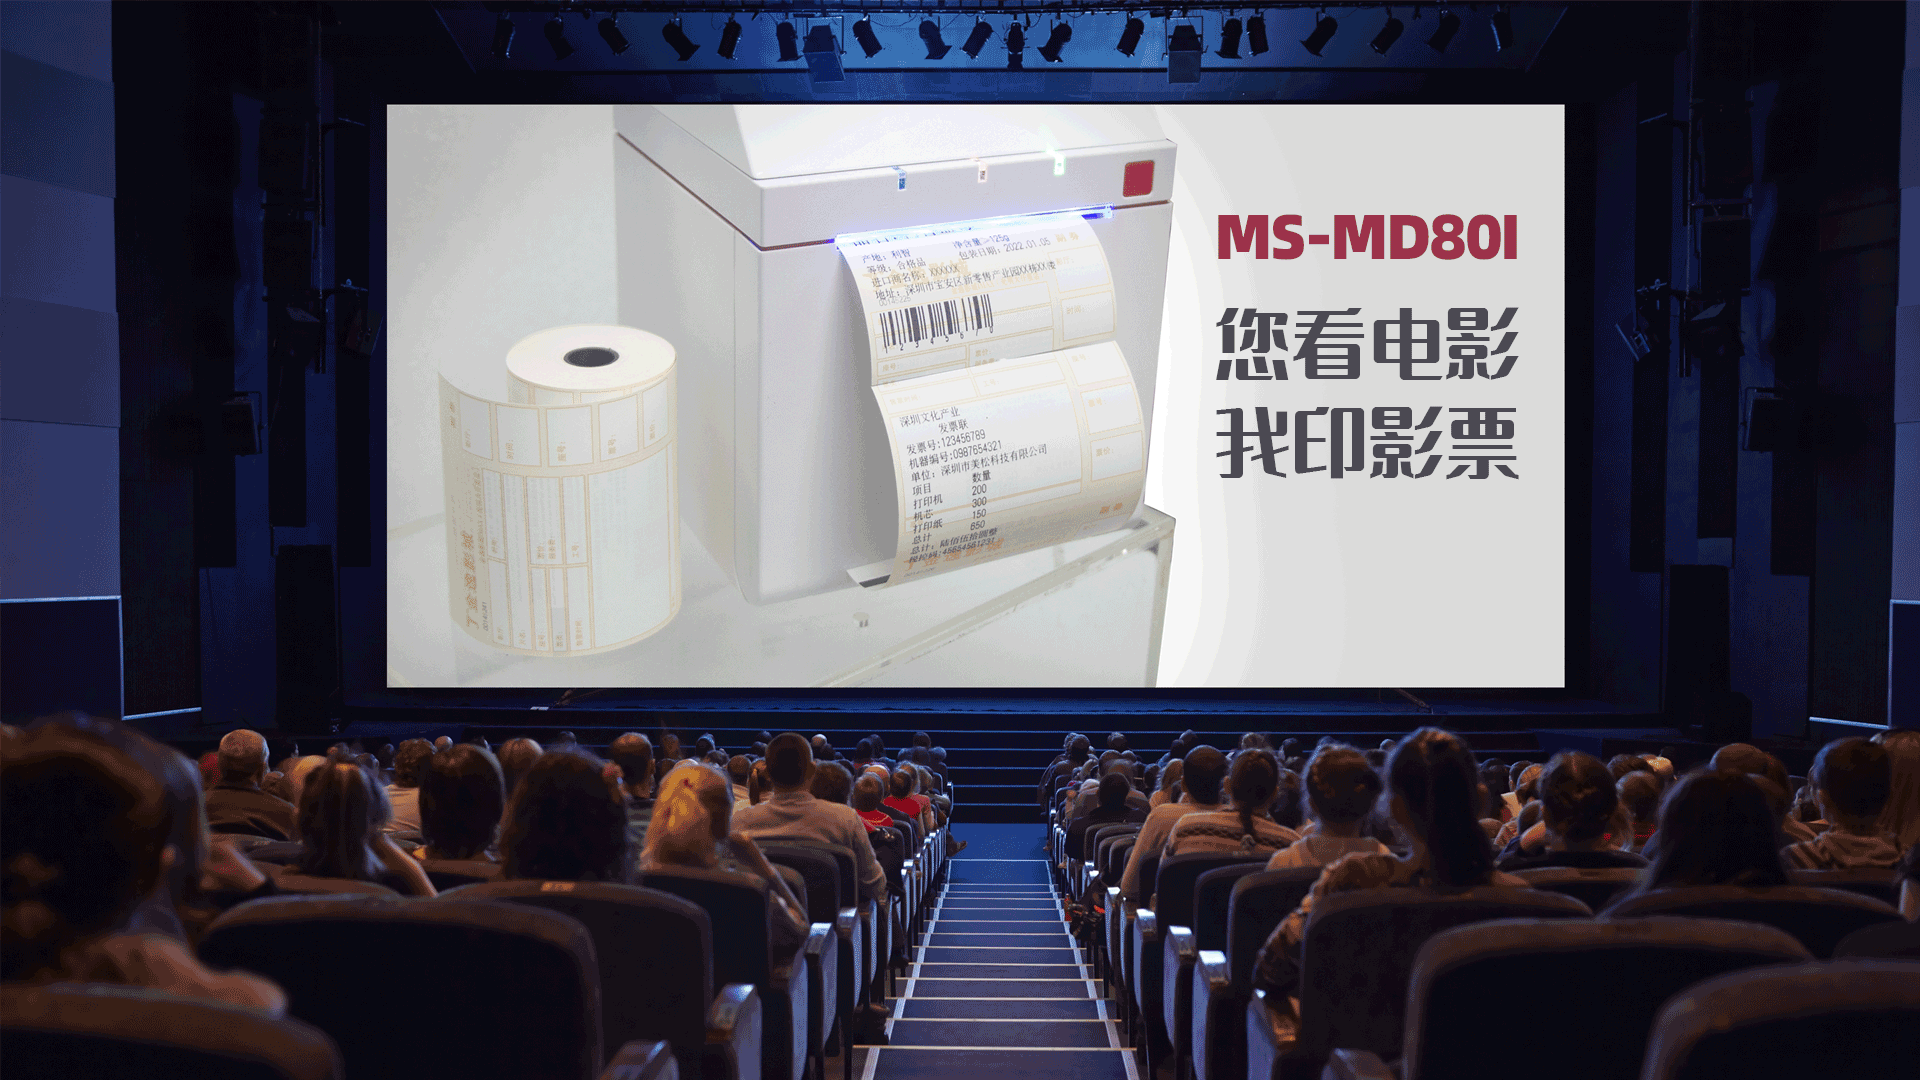 美松电影院打印机MS-MD80I专用型电影票打印热敏小票机